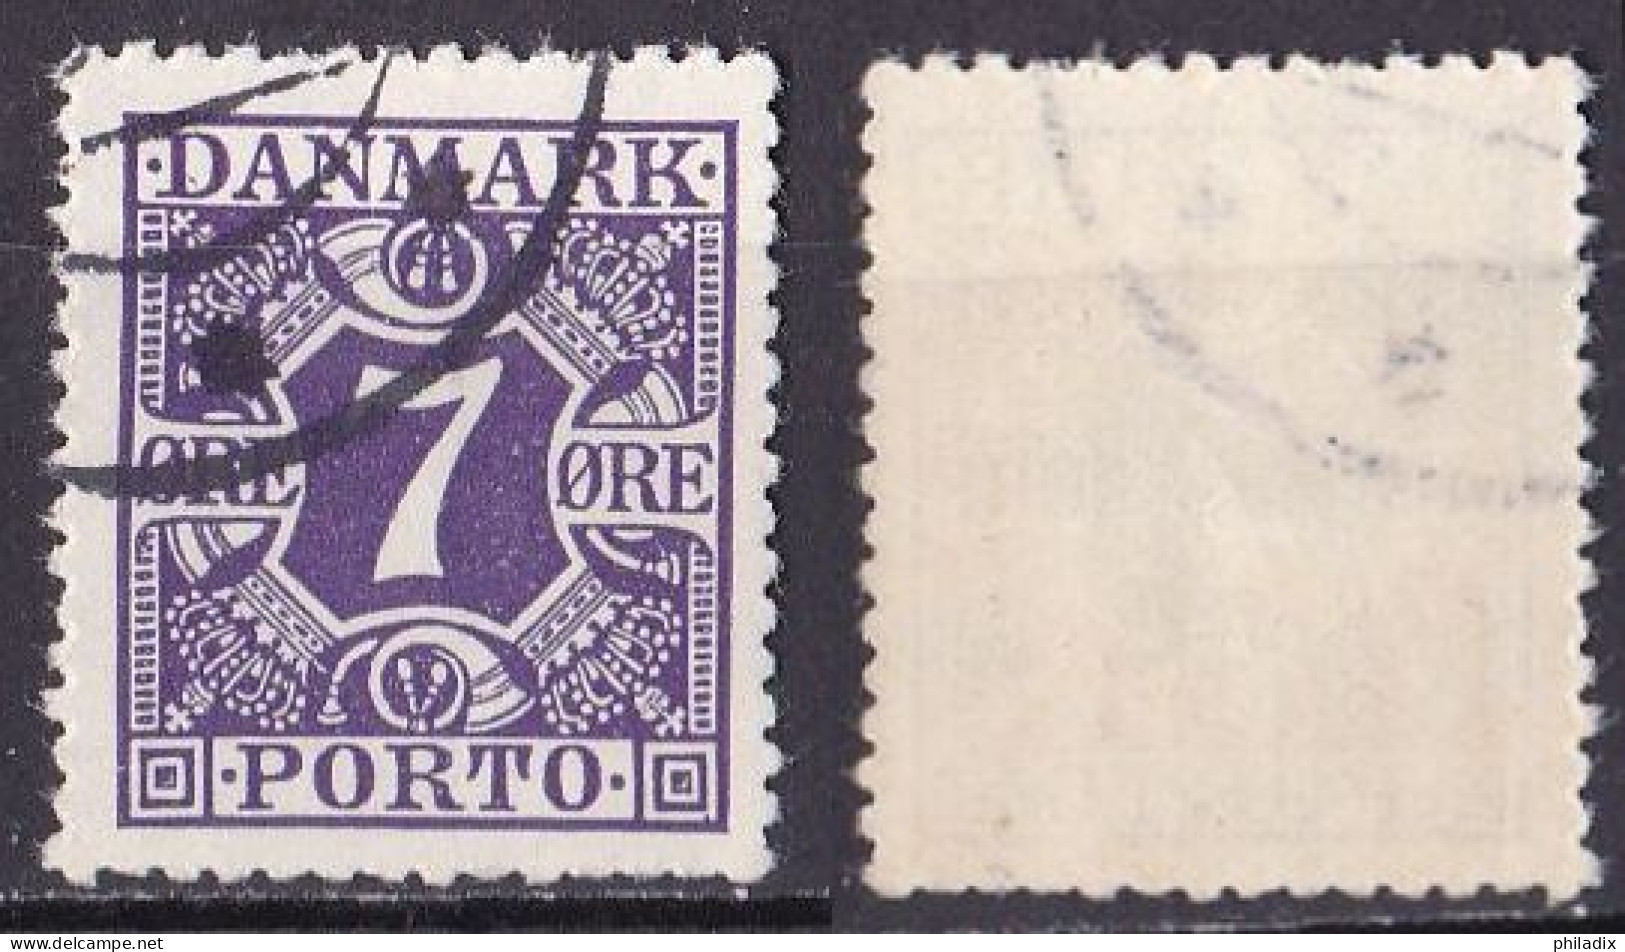 Dänemark Porto Marke Von 1930 O/used (A4-21) - Postage Due